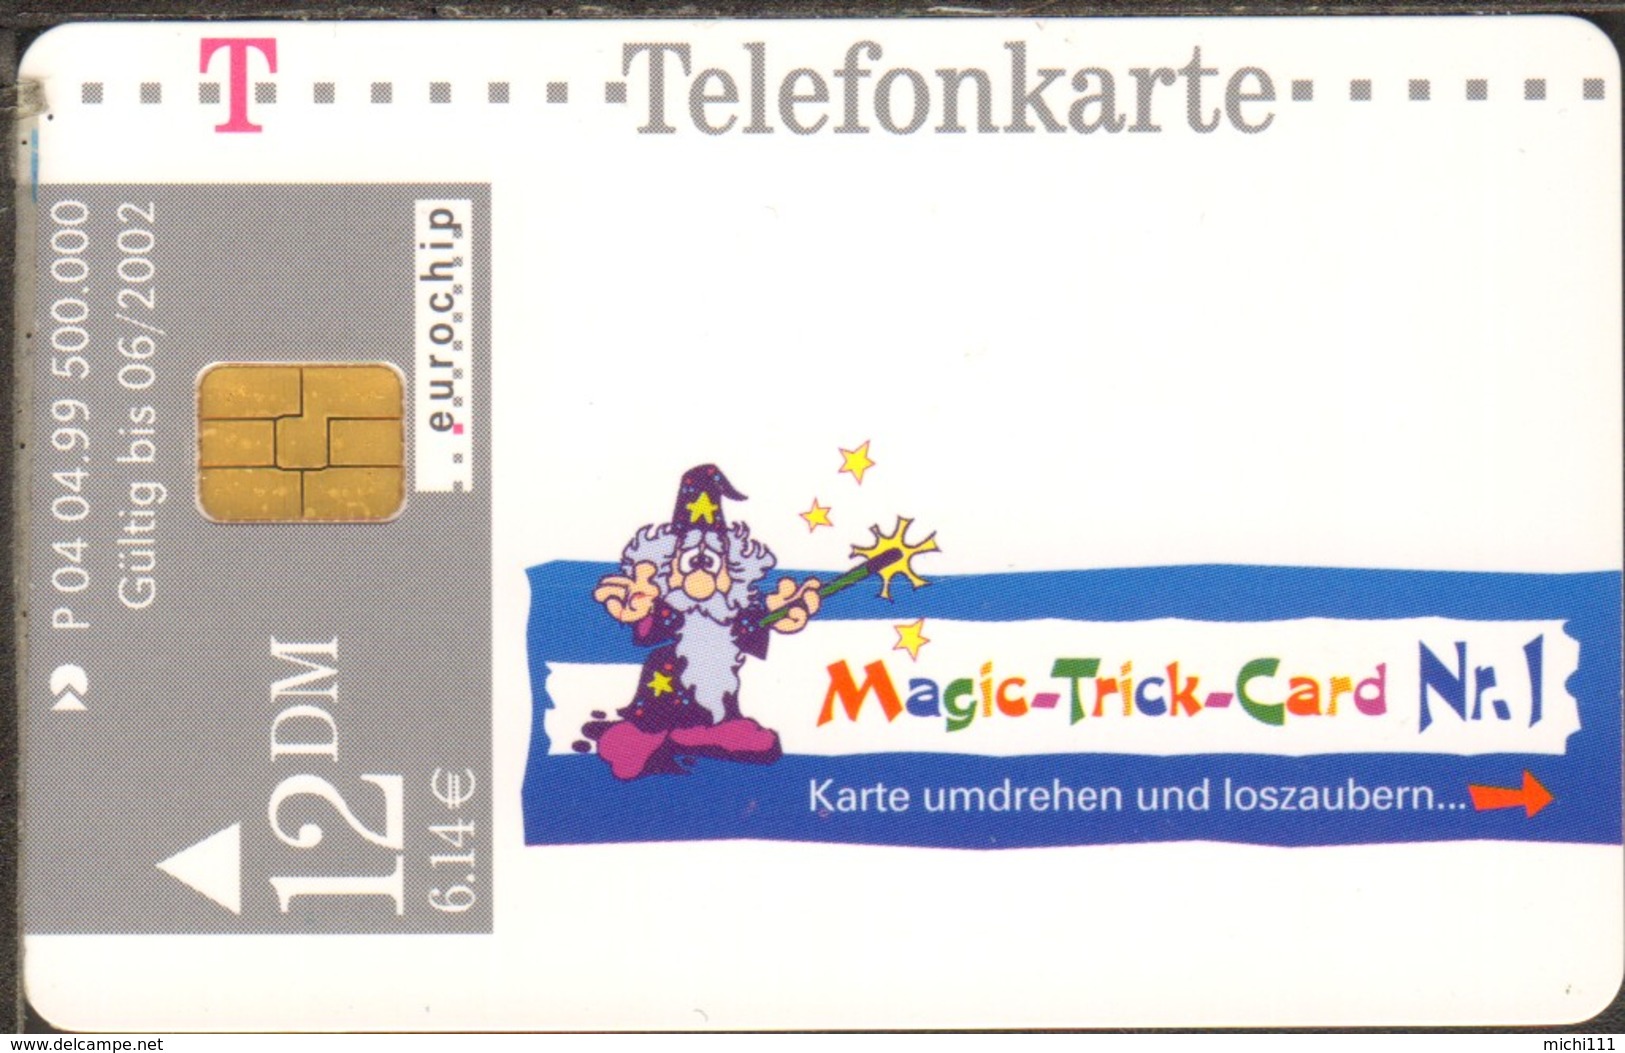 Phonecard Telefonkarte  Magic-Trick-Card Nr.1 P 04 04.99 12 DM/6,14€ Used - R-Series: Regionale Schalterserie